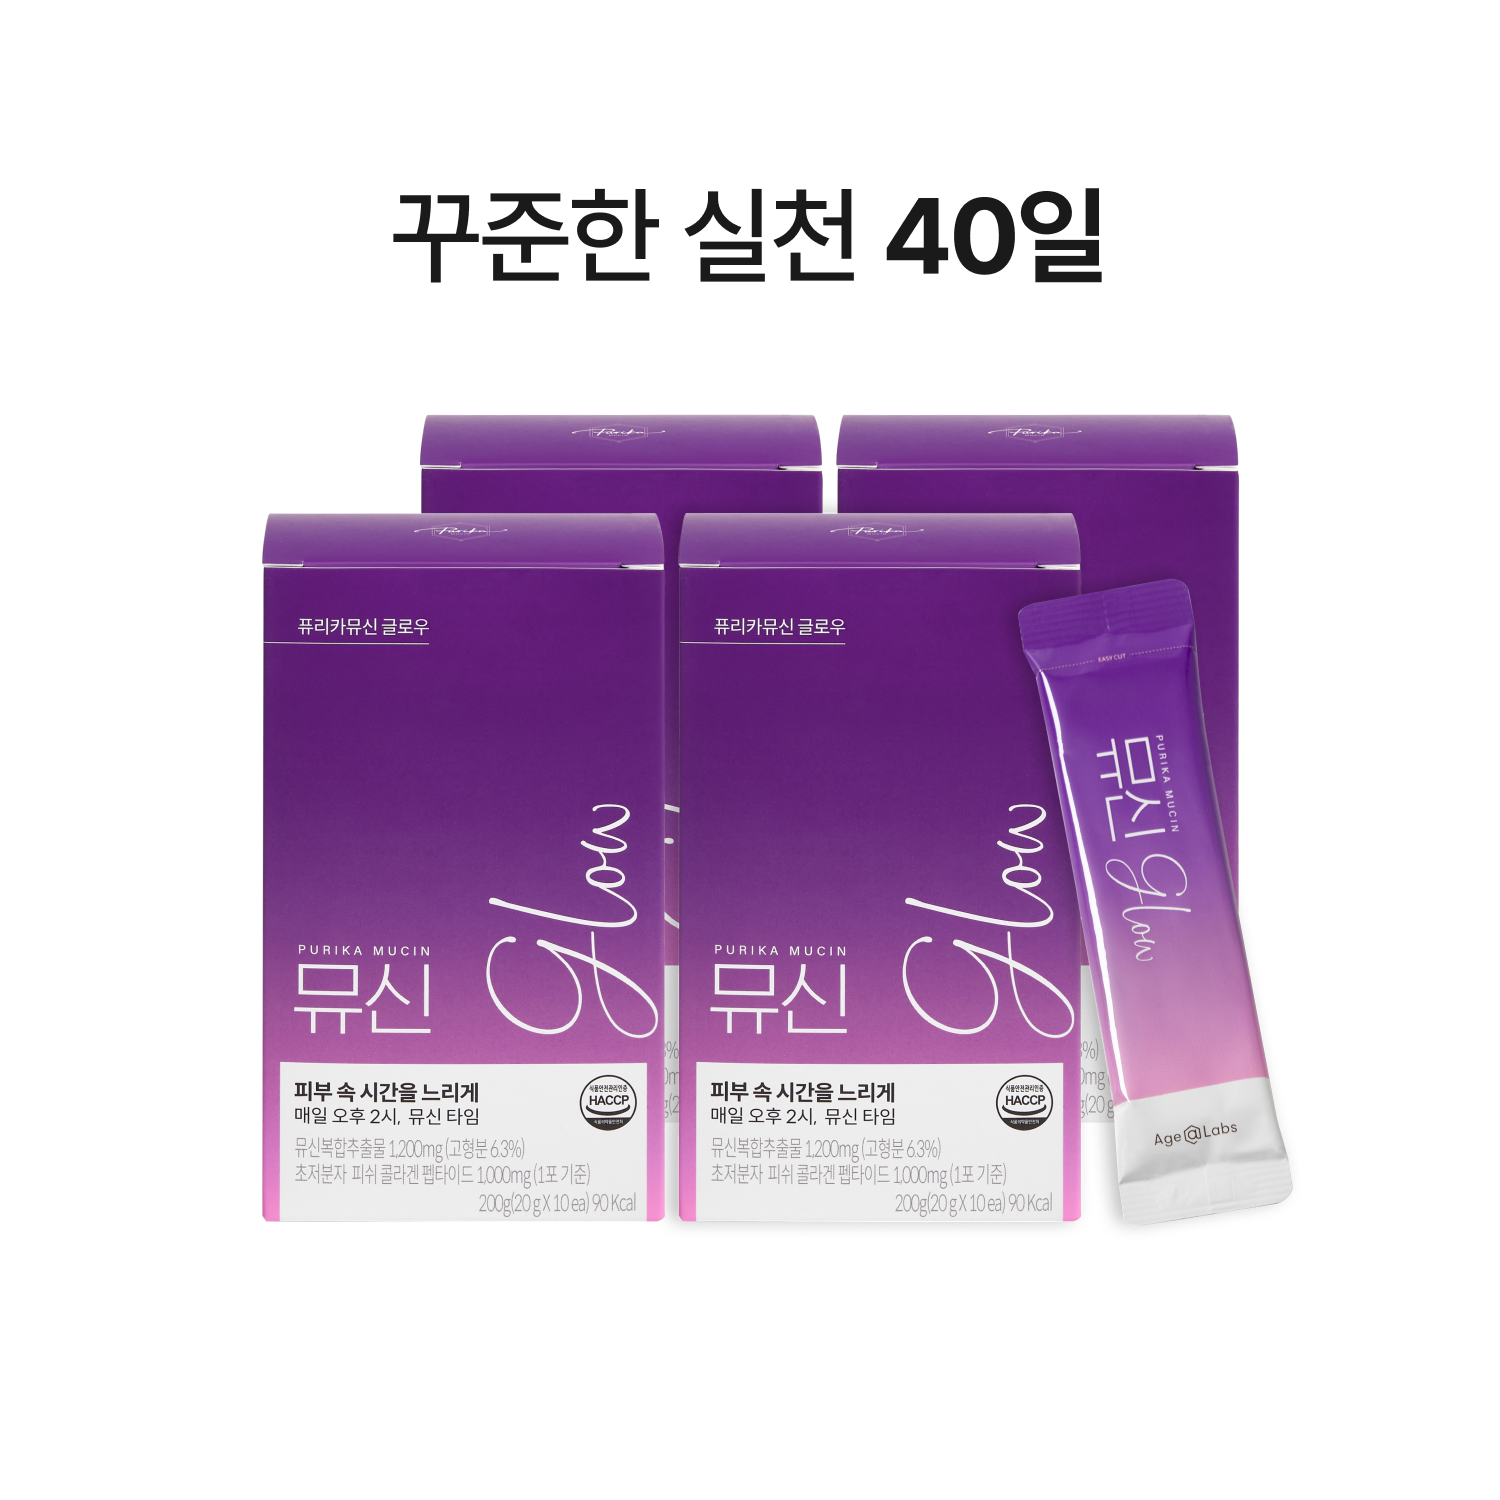 뮤신Glow (4box, 40일)